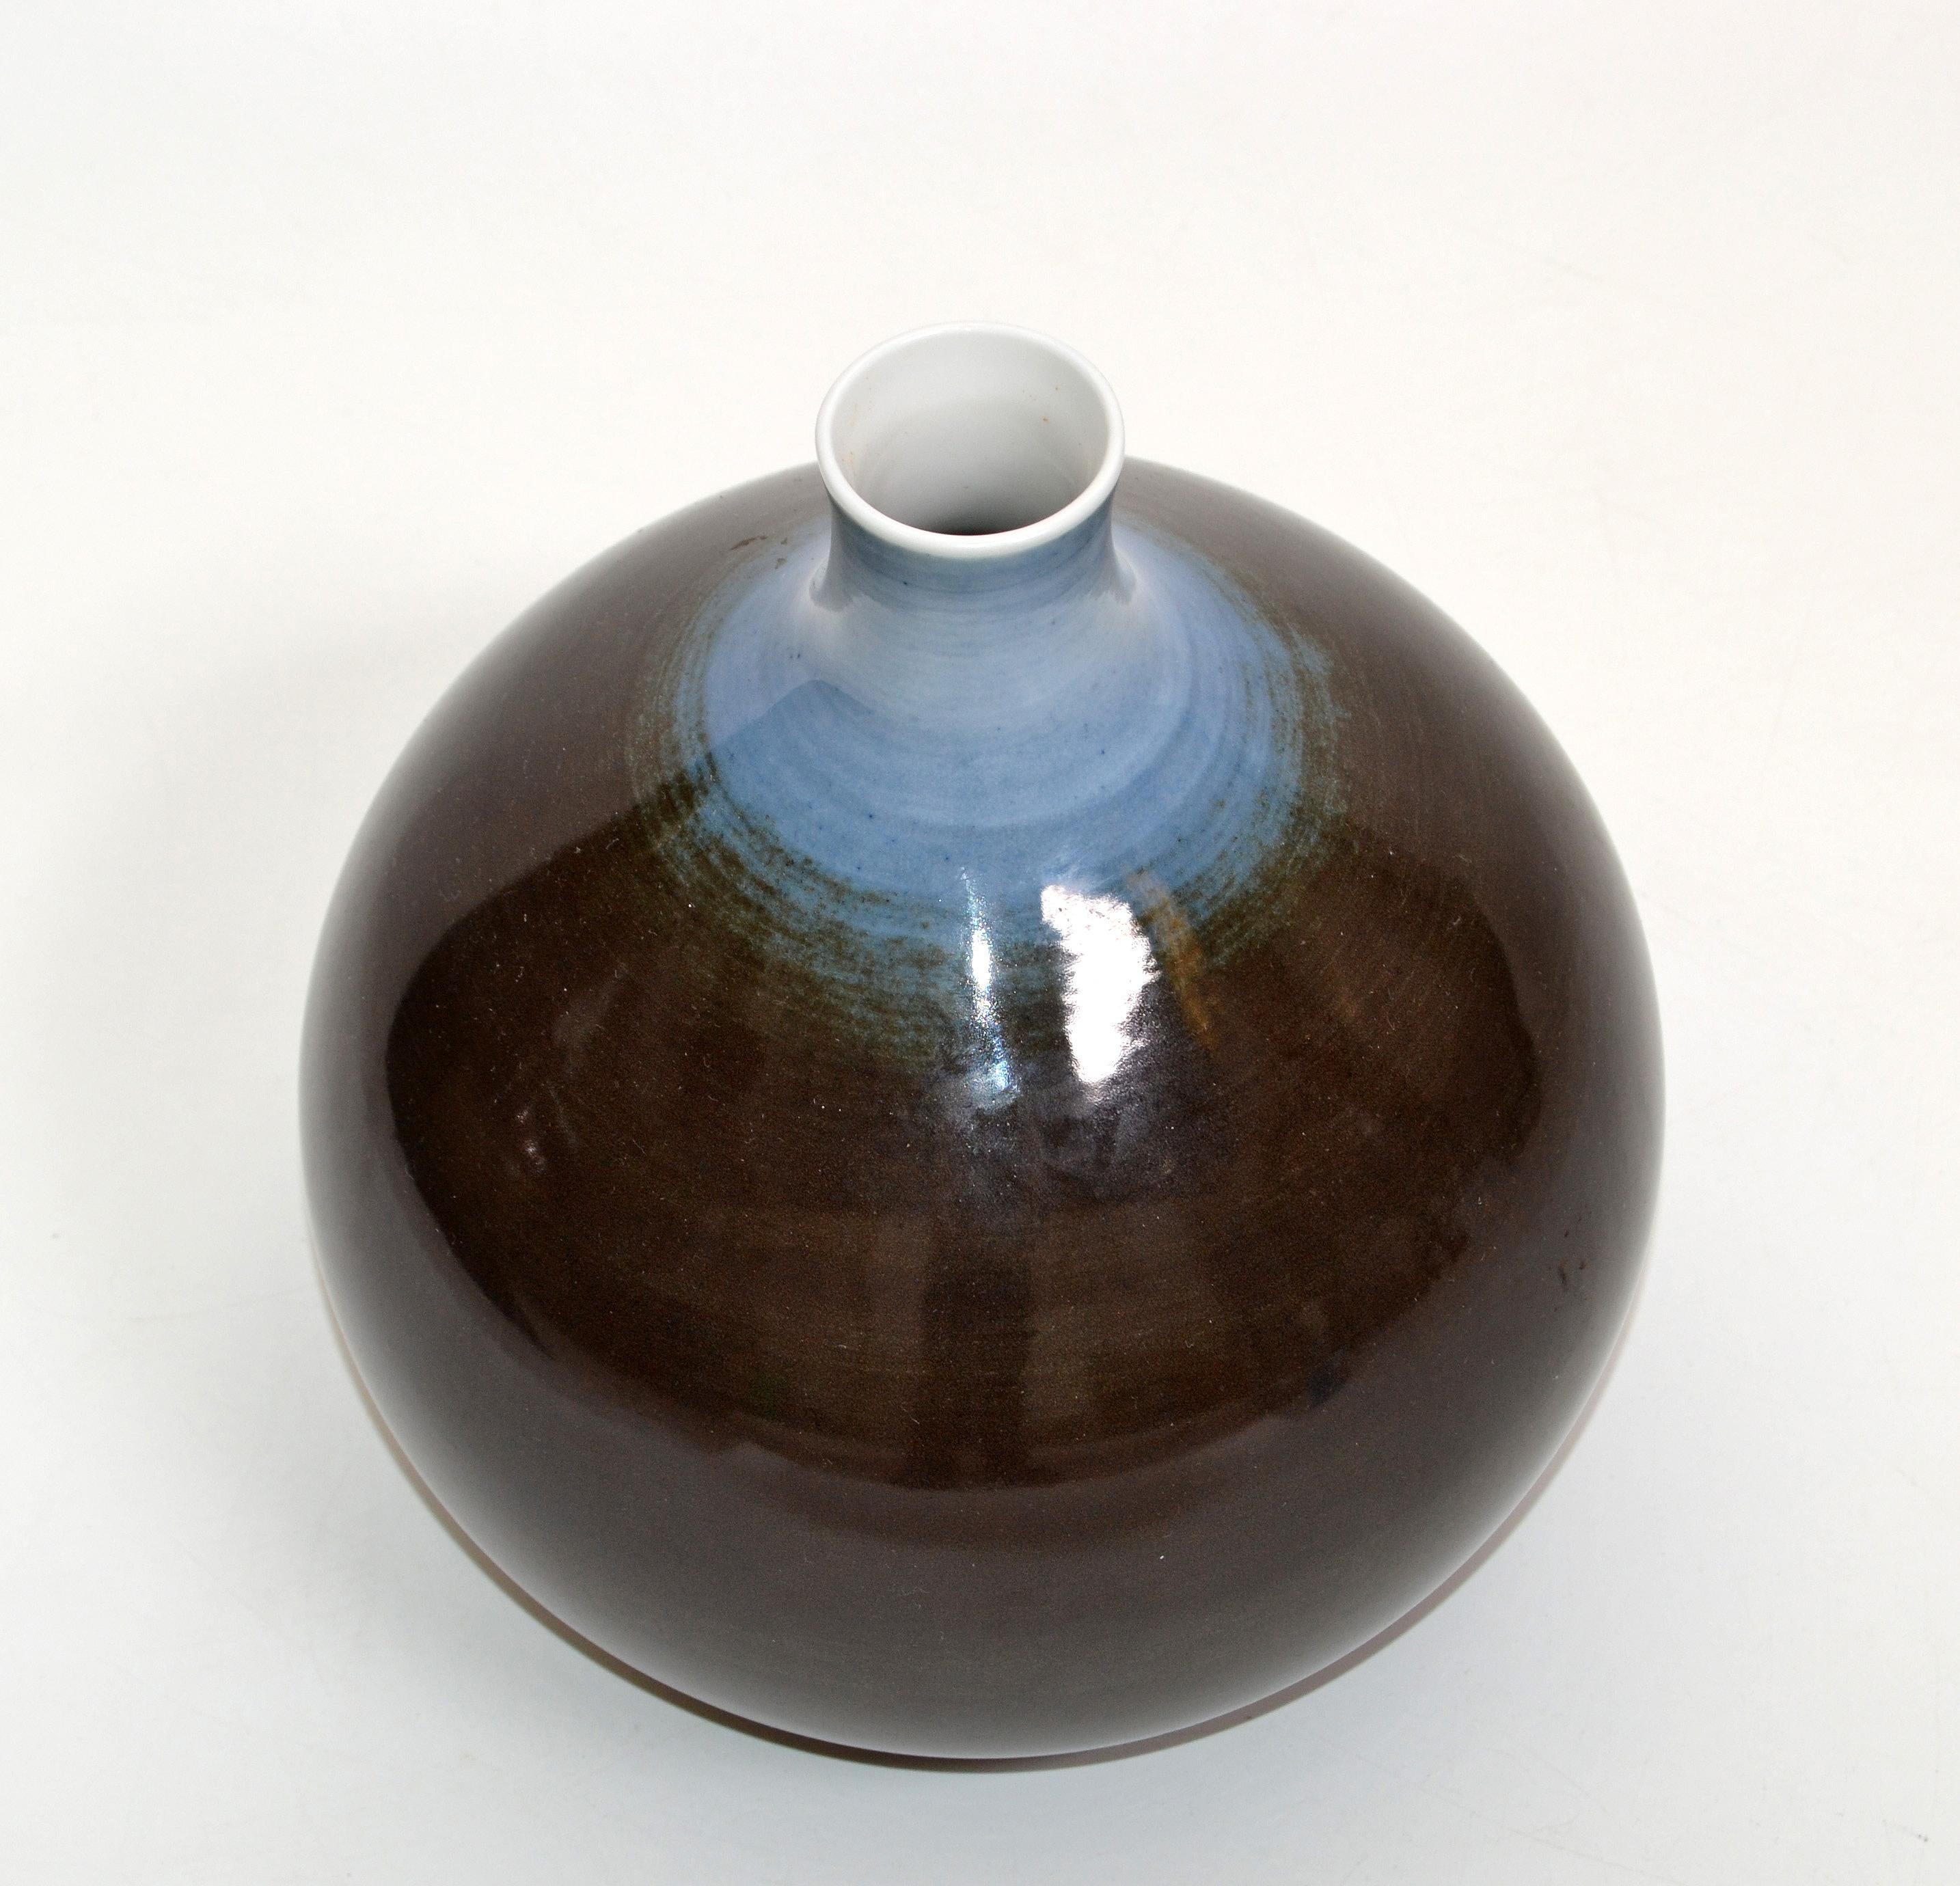 Vase à fleurs en forme de bouton en porcelaine fine émaillée, fabriqué en Bavière par Arzberg Hutschenreuther, Allemagne.
L'ouverture fait 1,13 pouces de diamètre.
Marque de porcelaine à la base.